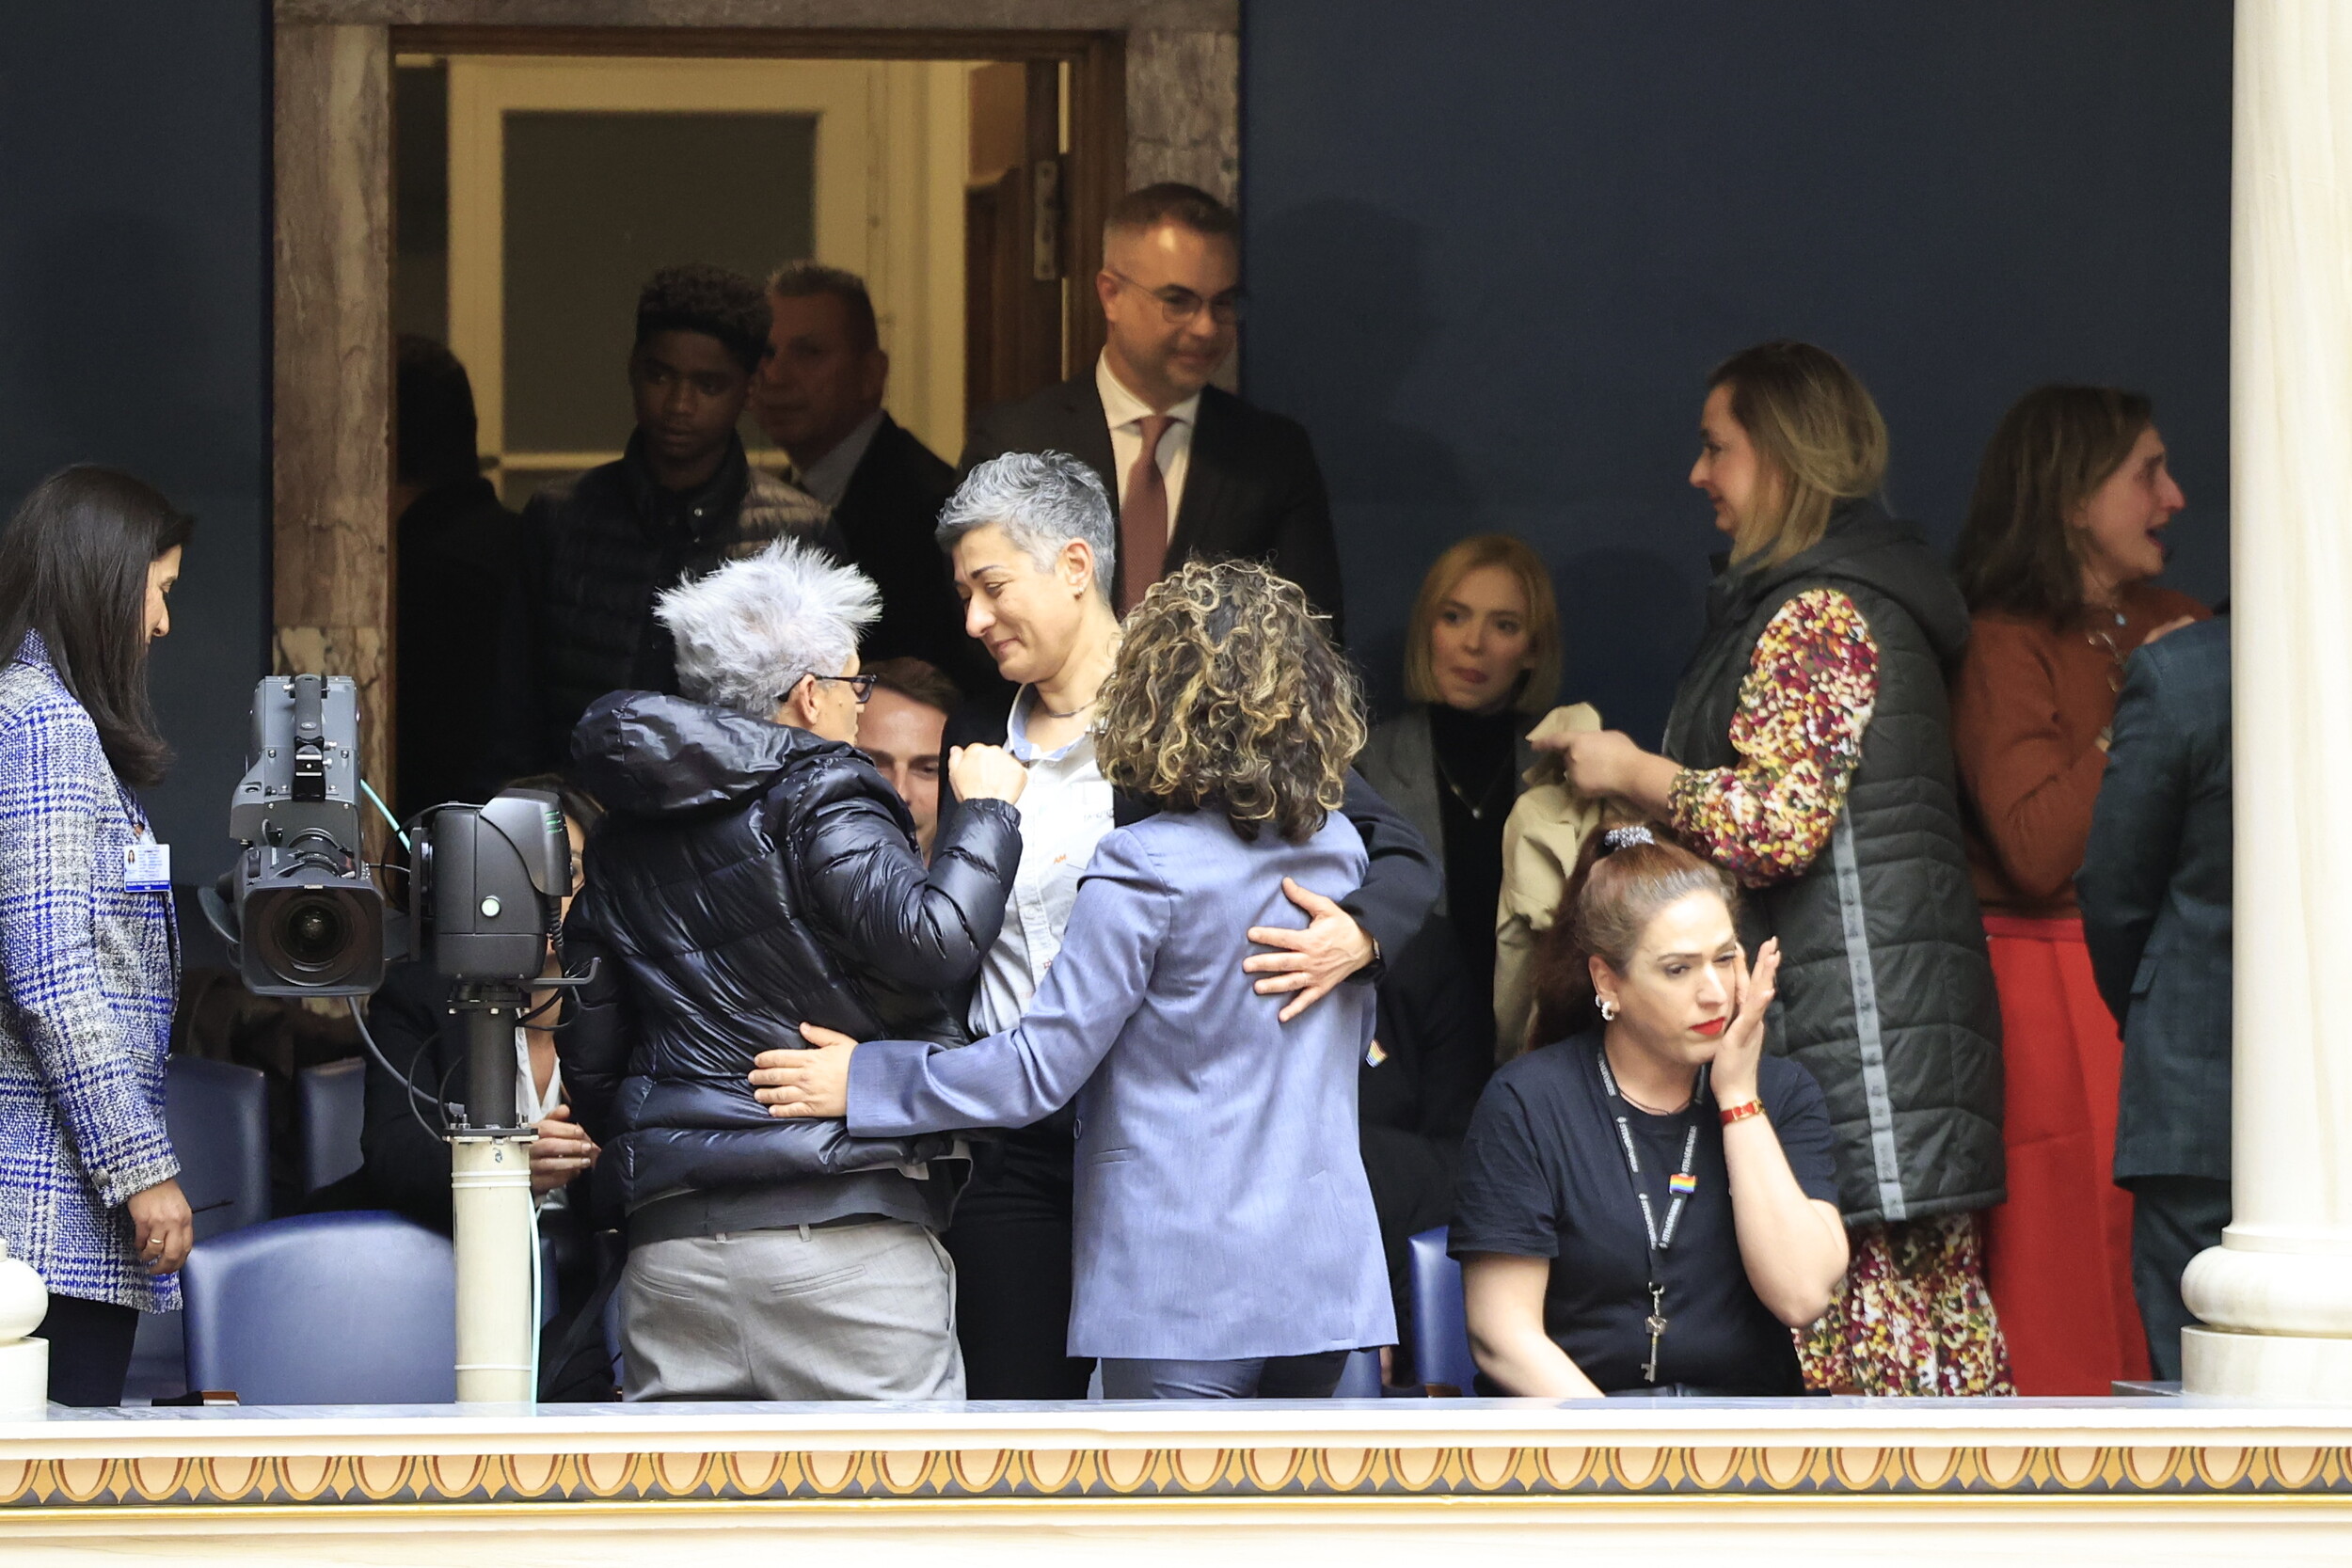 χαμόγελα, χειροκροτήματα και δάκρυα συγκίνησης μετά την υπερψήφιση του νομοσχεδίου για τα ομόφυλα ζευγάρια